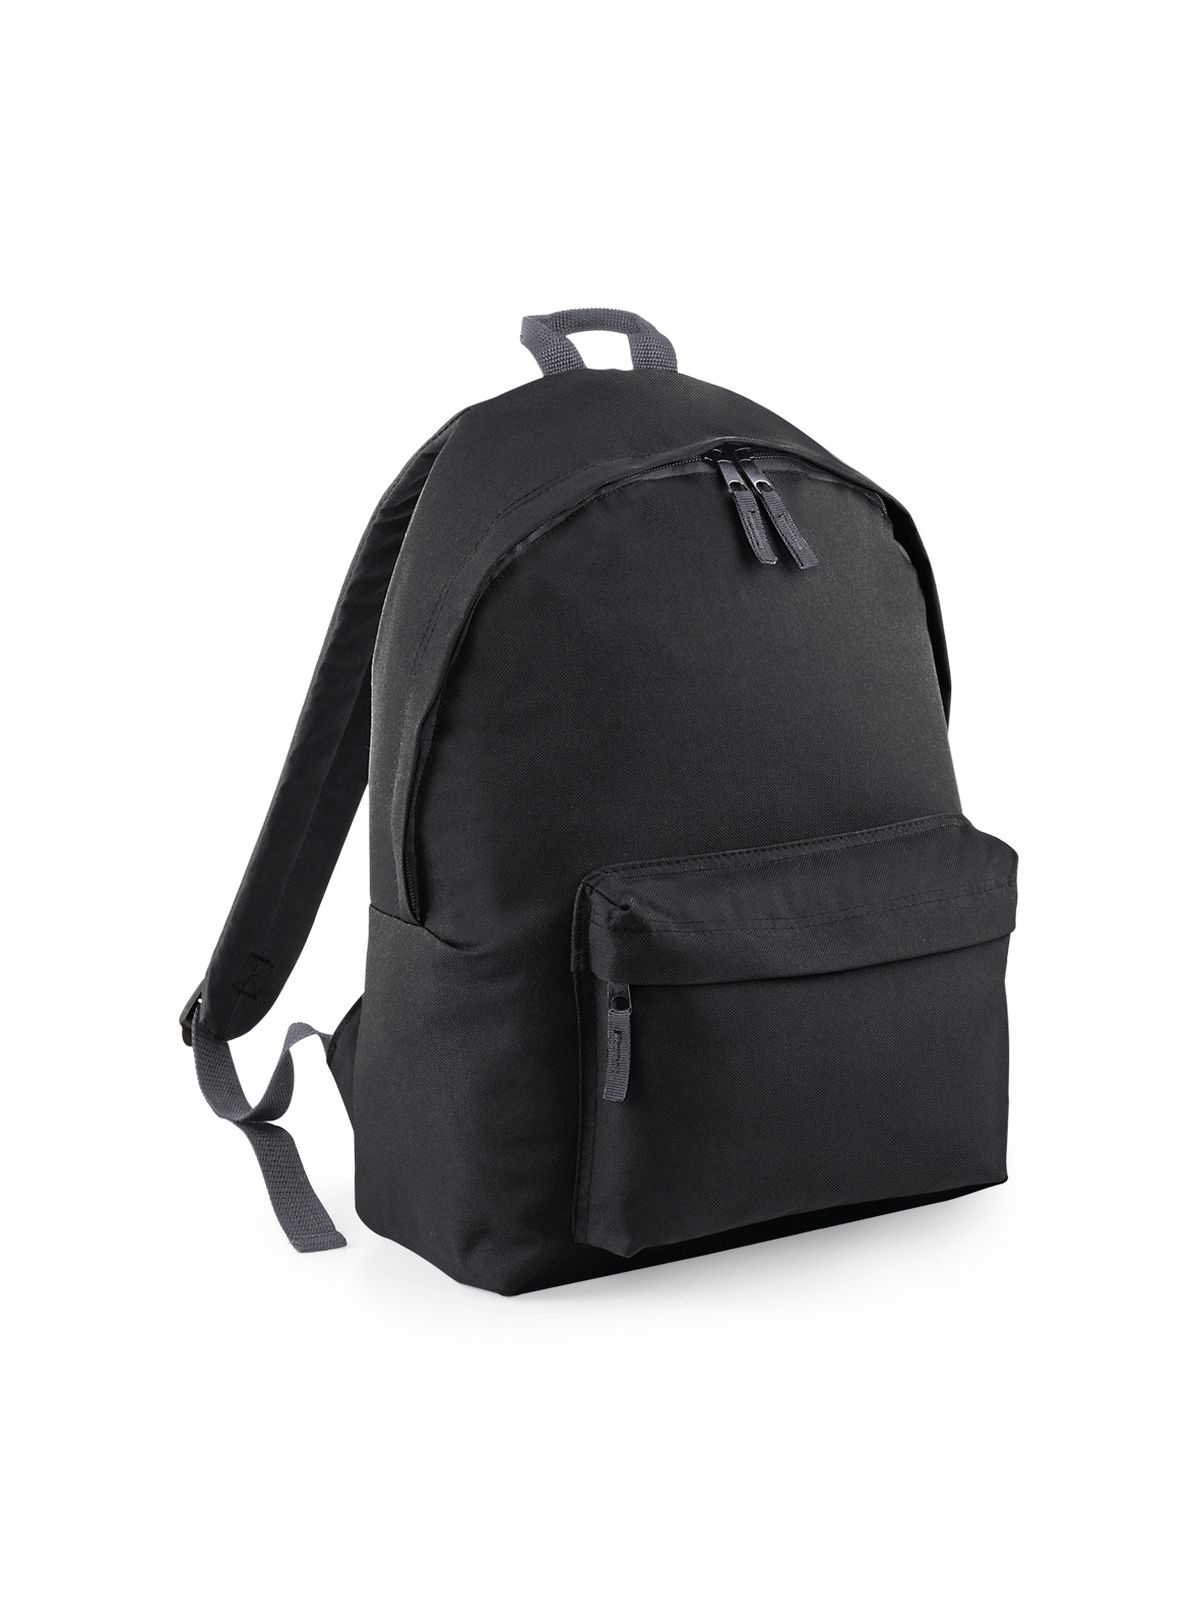 junior-fashion-backpack-black.webp